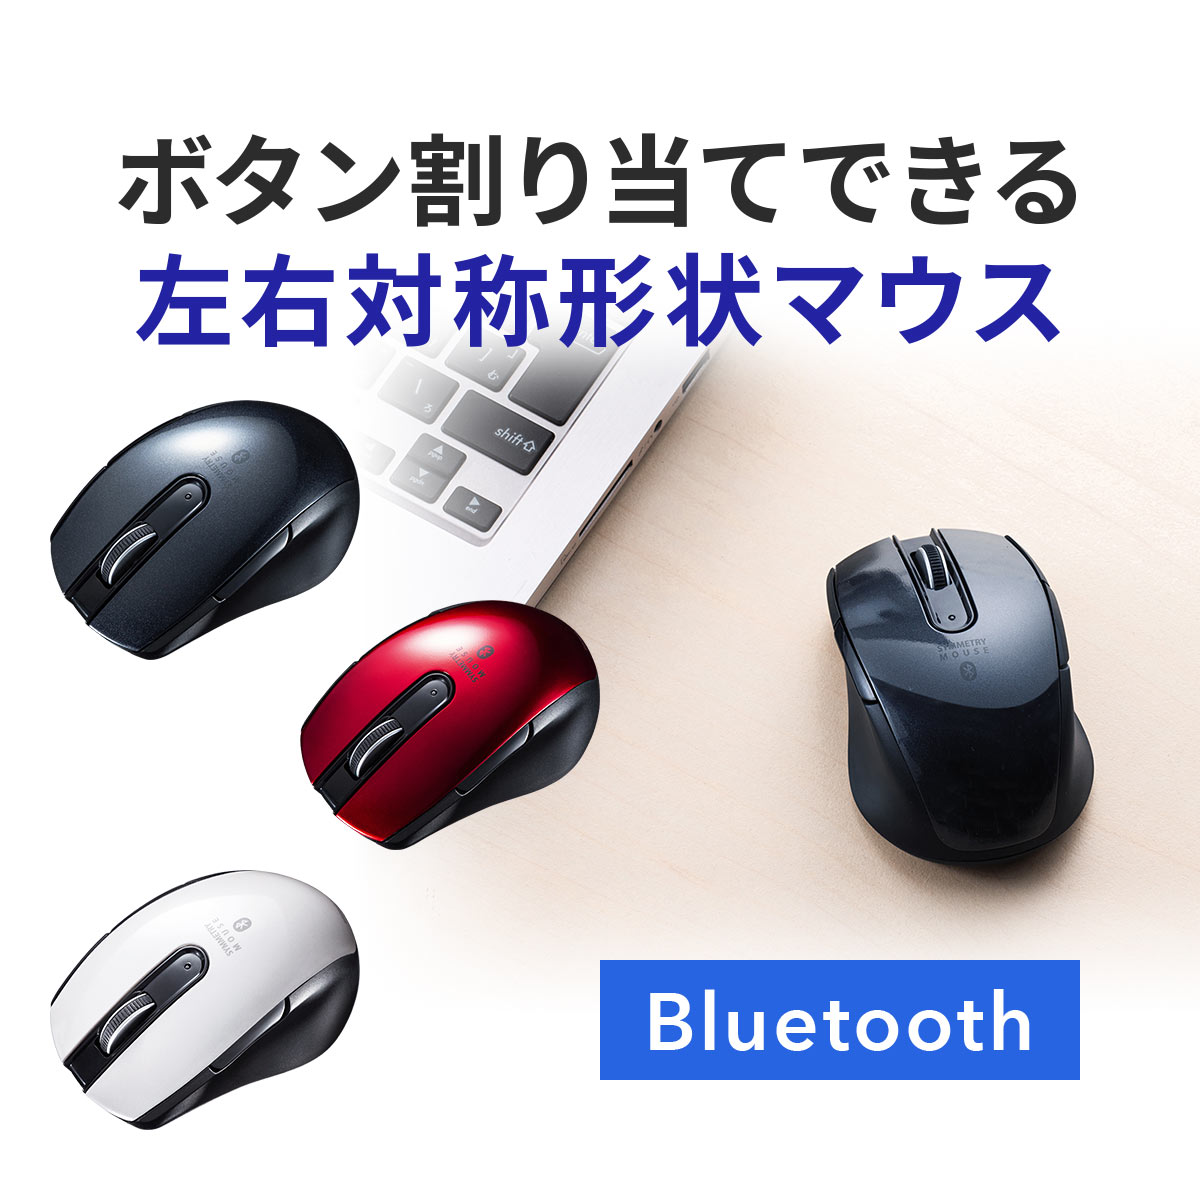 ワイヤレスマウス 無線 Bluetoothマウス 無線 小型 左右対称 左利き 右利き 5ボタン サイドボタン ボタン割り当て ブラック ブルートゥース 多ボタンマウス